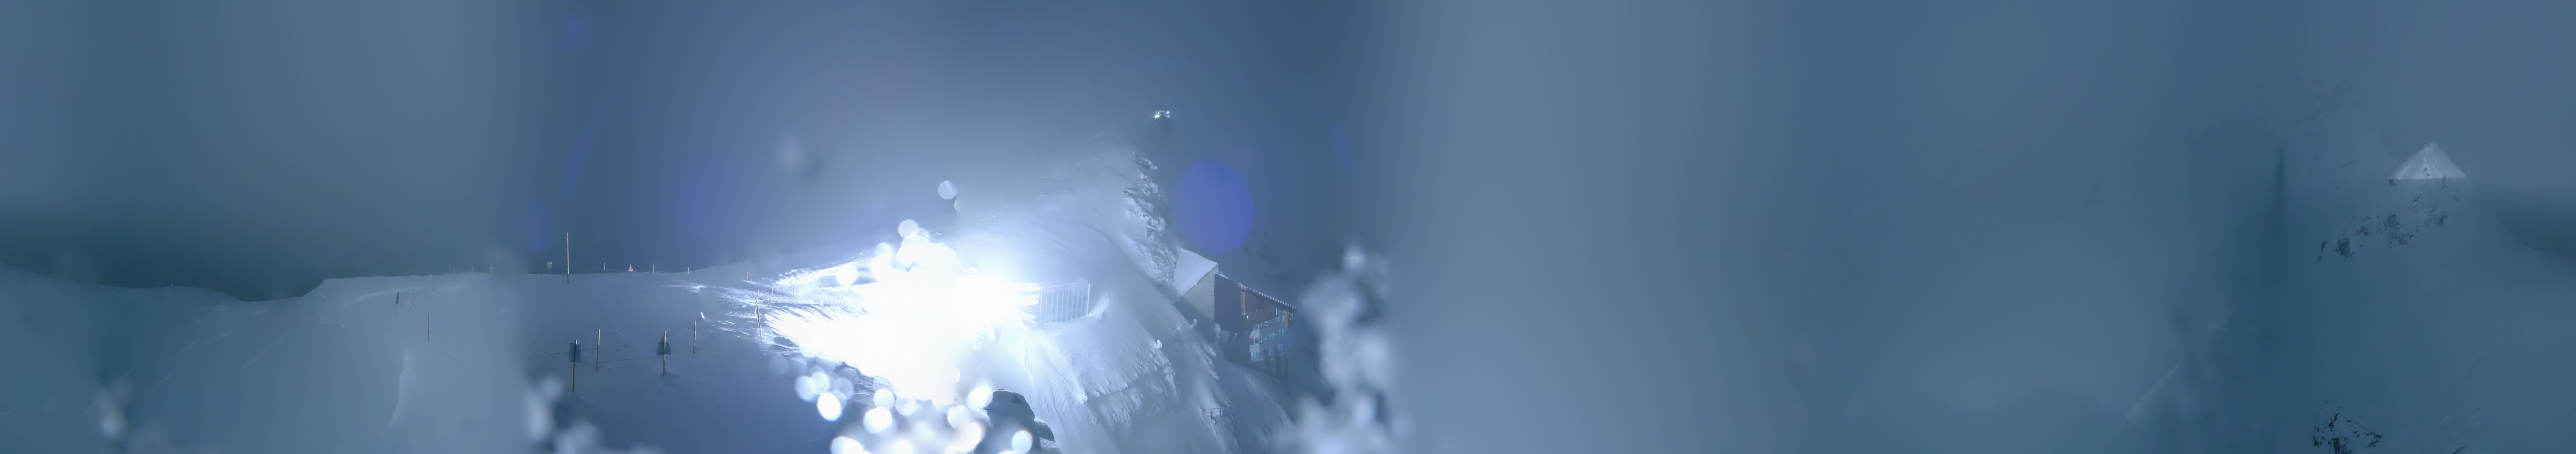 Jungfraujoch Live Cameras